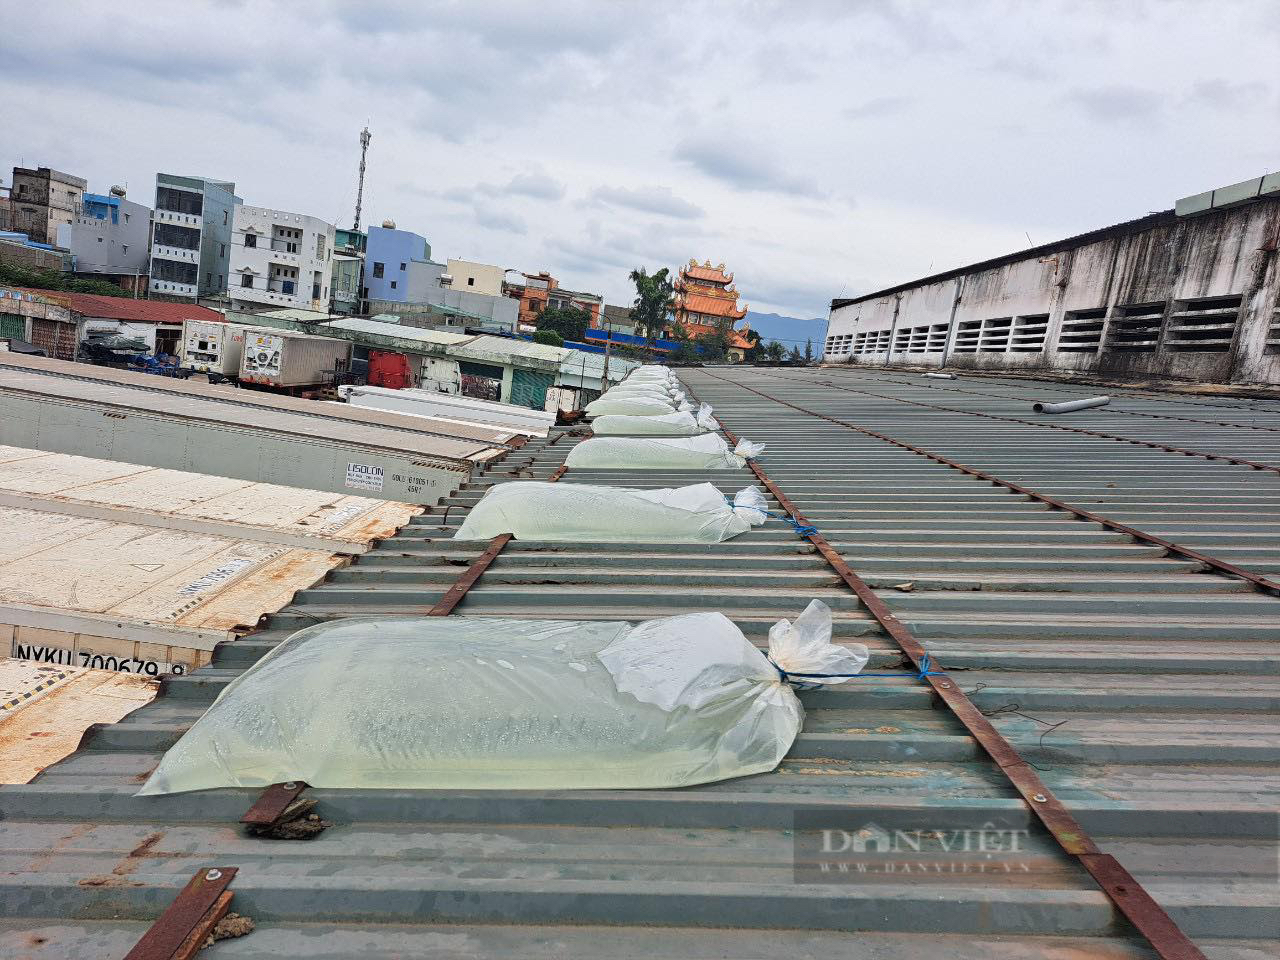 Người dân Bình Định cấp tốc đổ nước vào túi nilon chèn mái nhà chống bão - Ảnh 3.